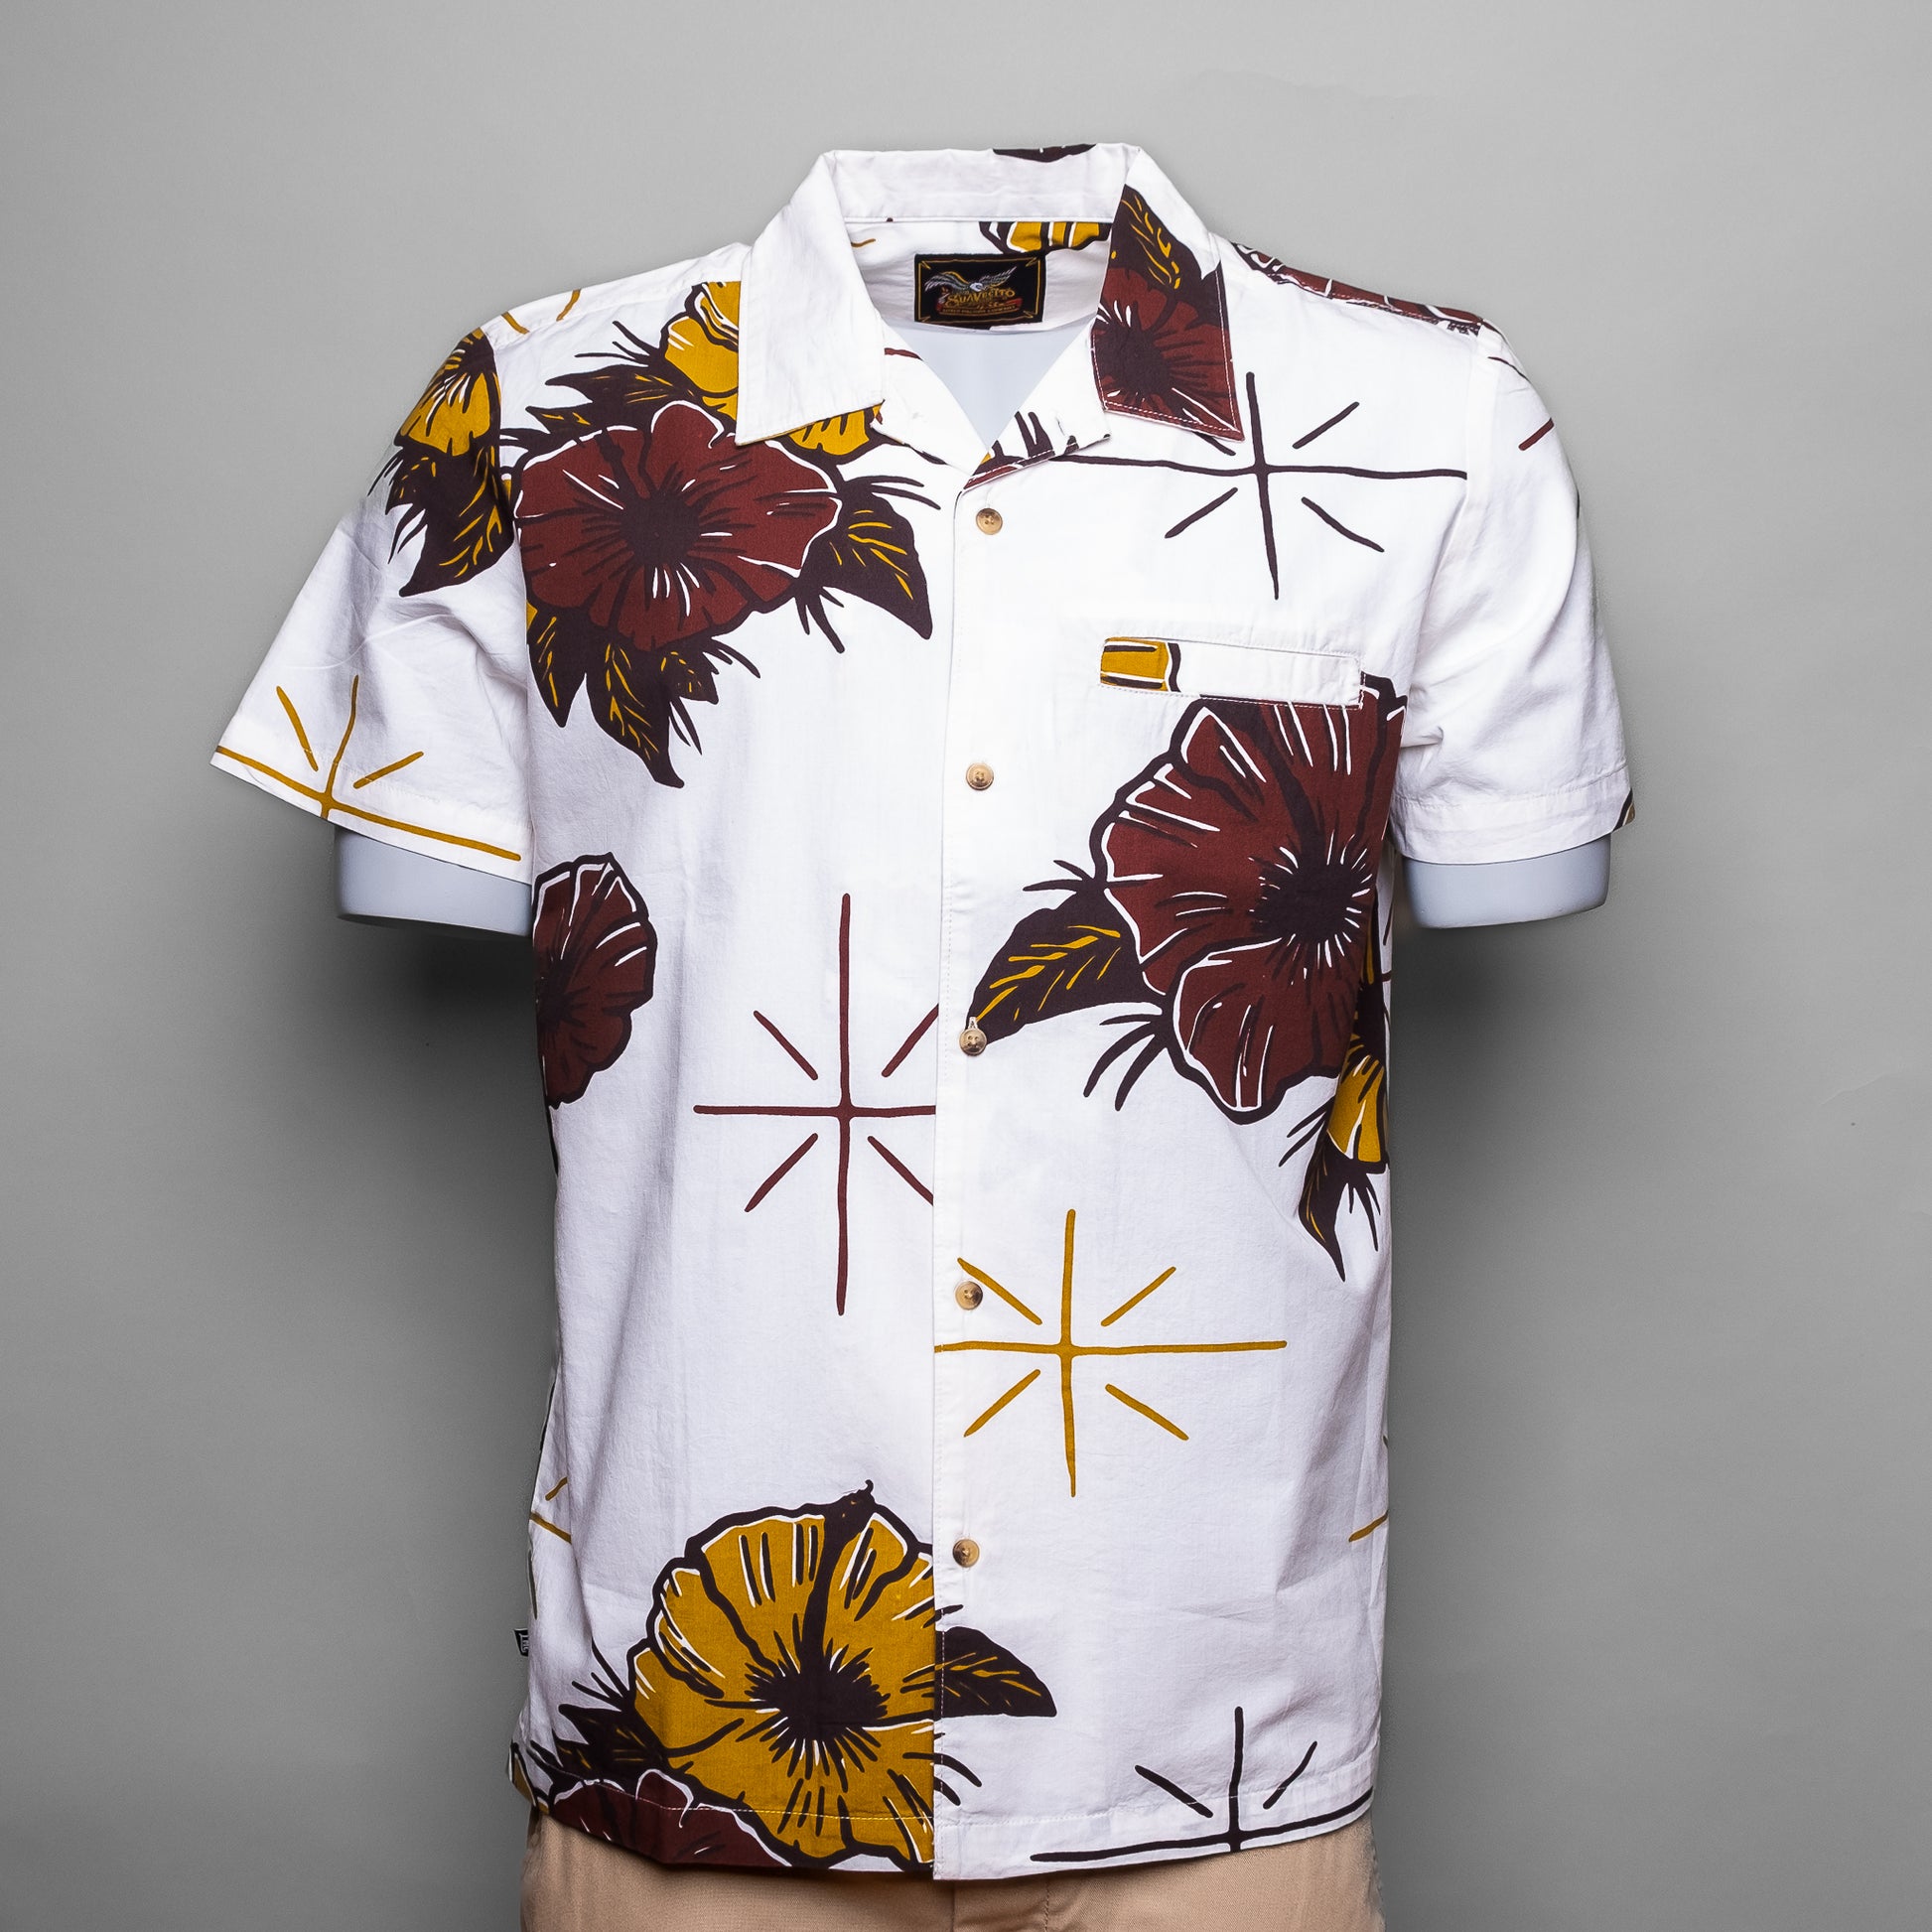 Losers Machine - Suavecito Tropicarlos: Ein cooler Look gepaart mit legerem Style. Hergestellt aus 100% Baumwolle, überzeugt dieses Shirt durch eine Brusttasche die einen individuellen Touch verleiht.